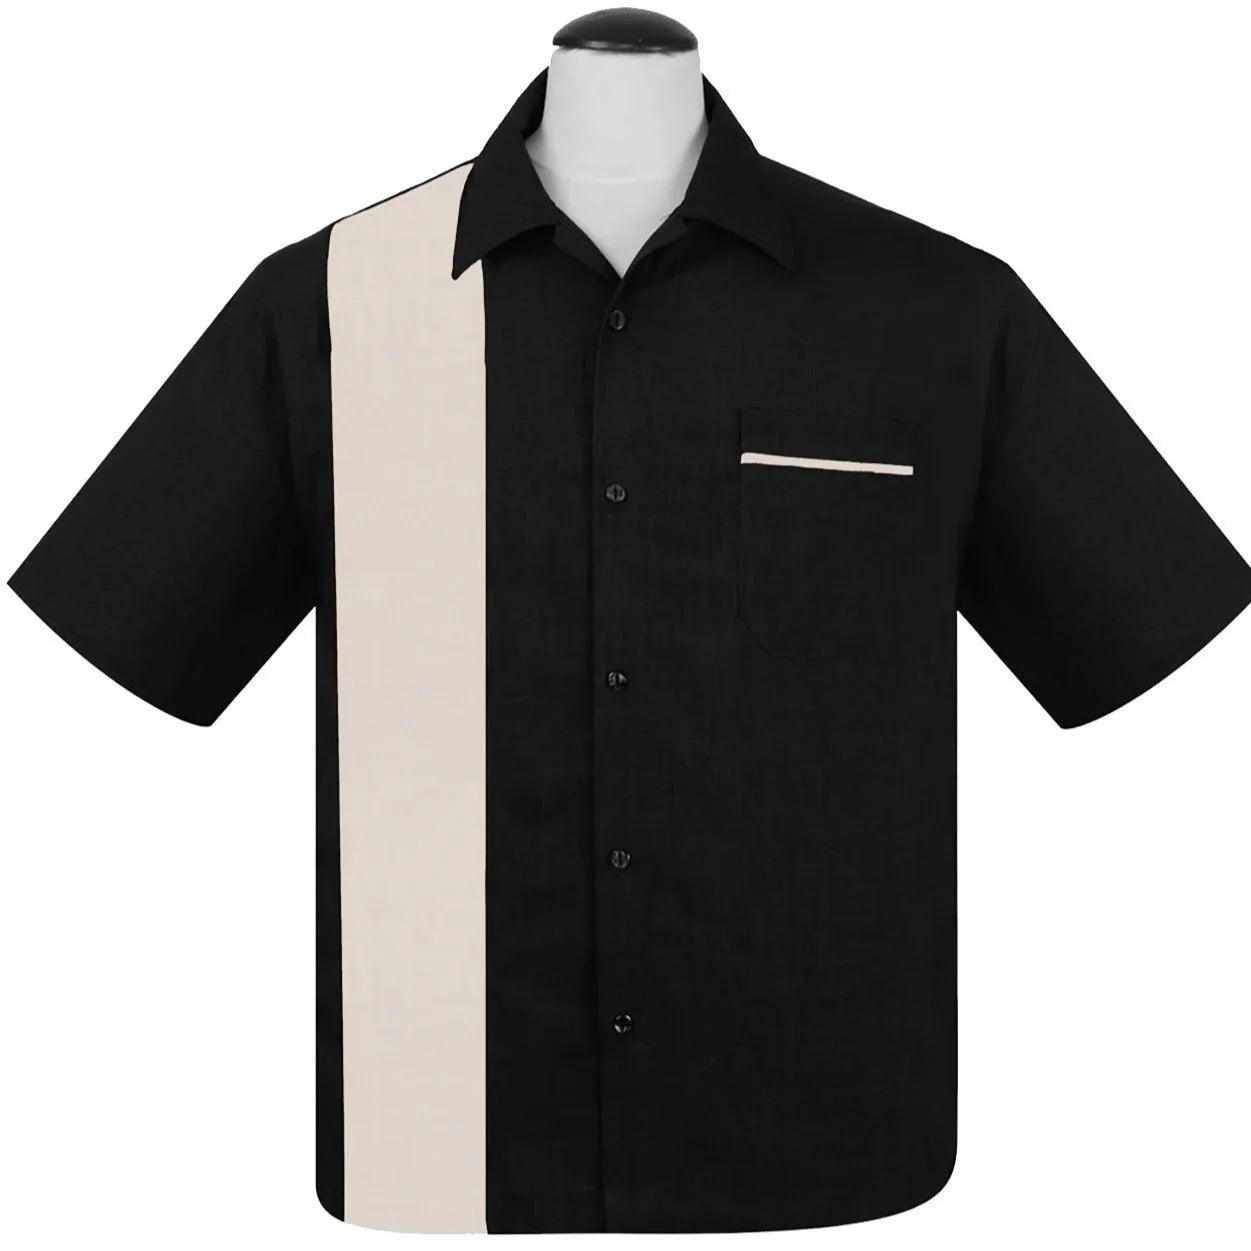 KAULUSPAITA - POPLIN SINGLE PANEL BLK/WHT - STEADY CLOTHING (85072)